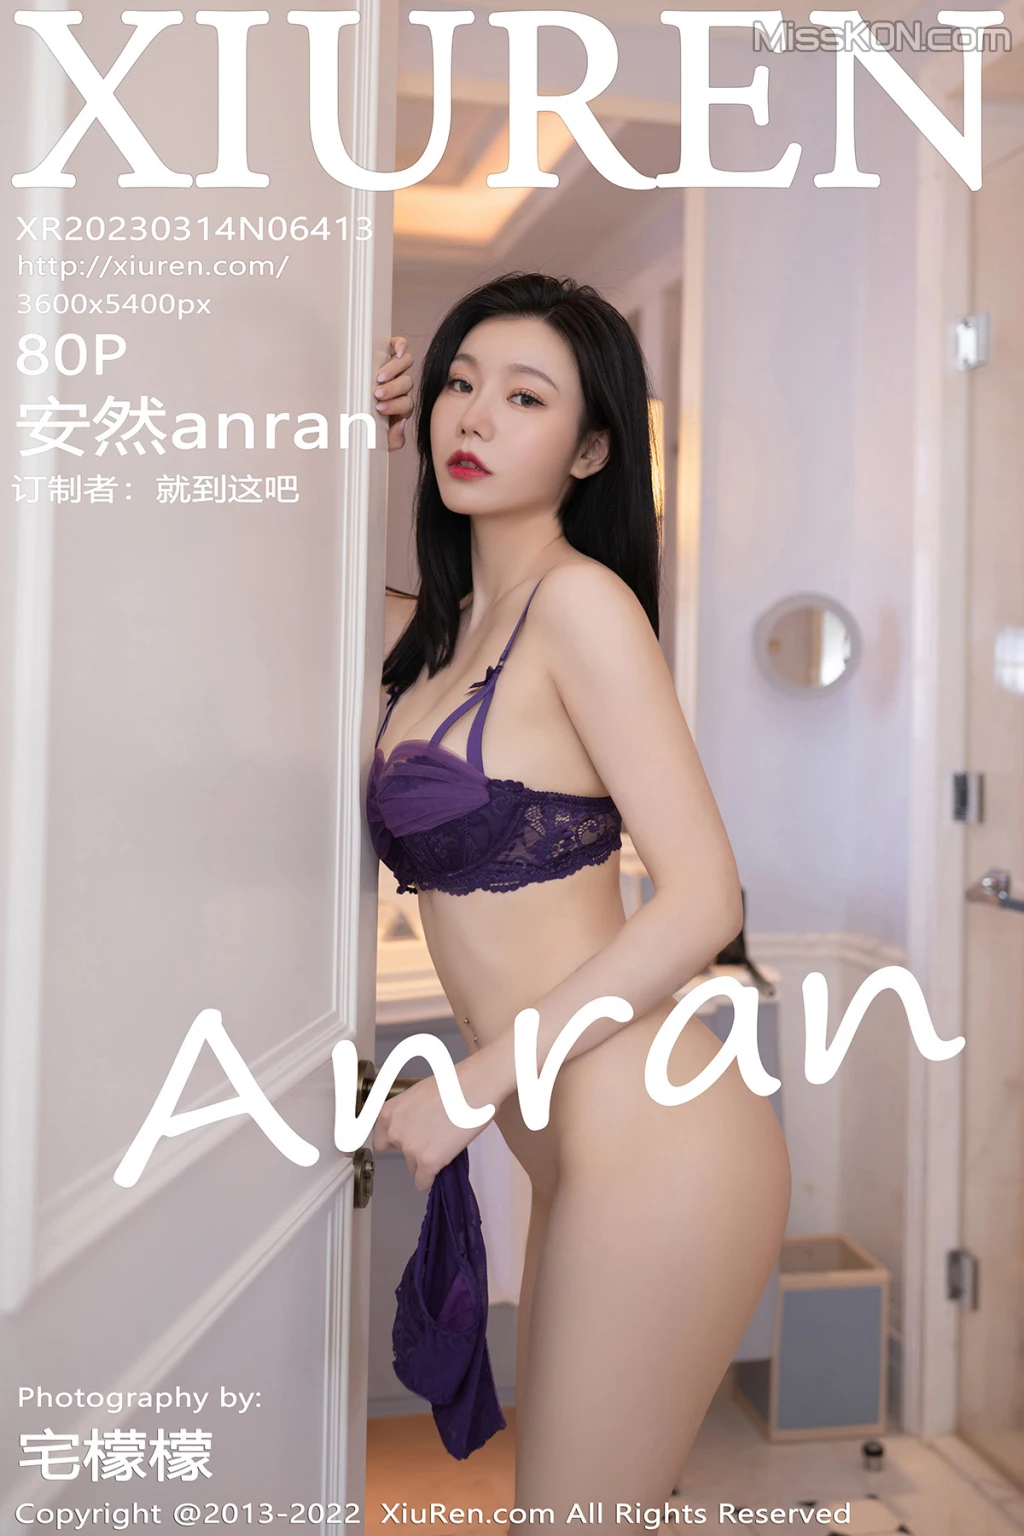 XIUREN No.6413: 安然anran (81 photos)